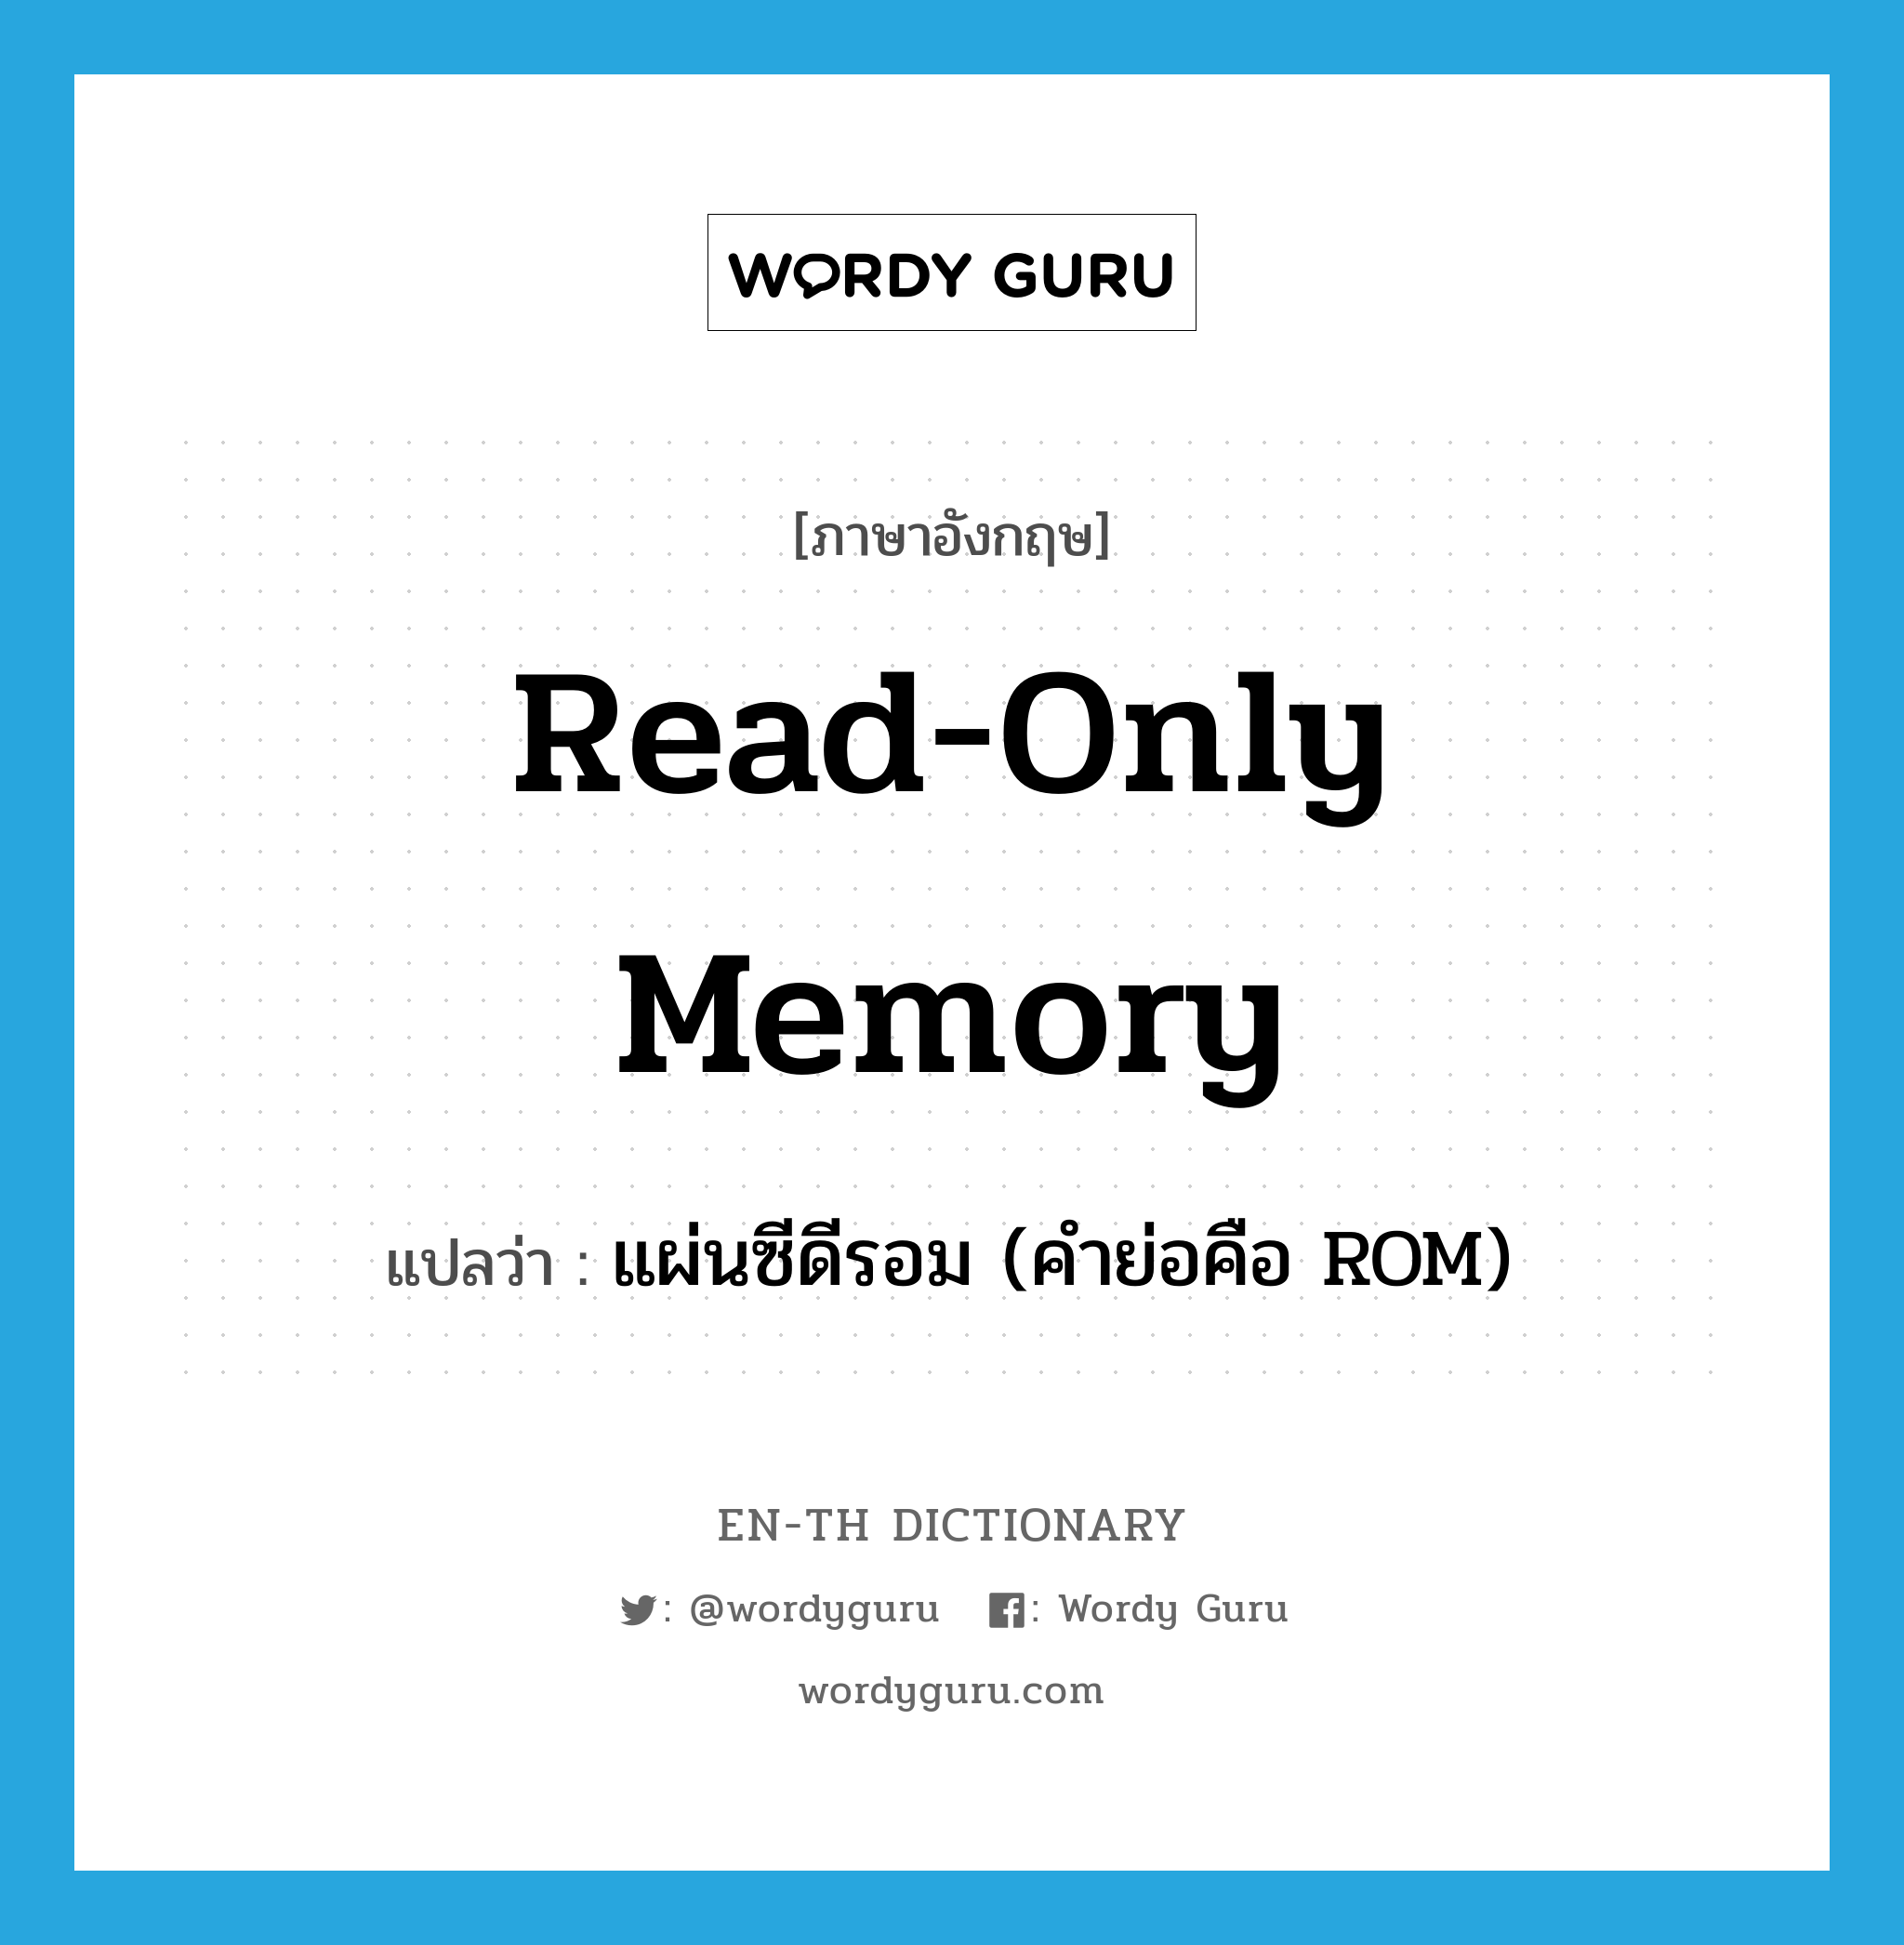 แผ่นซีดีรอม (คำย่อคือ ROM) ภาษาอังกฤษ?, คำศัพท์ภาษาอังกฤษ แผ่นซีดีรอม (คำย่อคือ ROM) แปลว่า read-only memory ประเภท N หมวด N